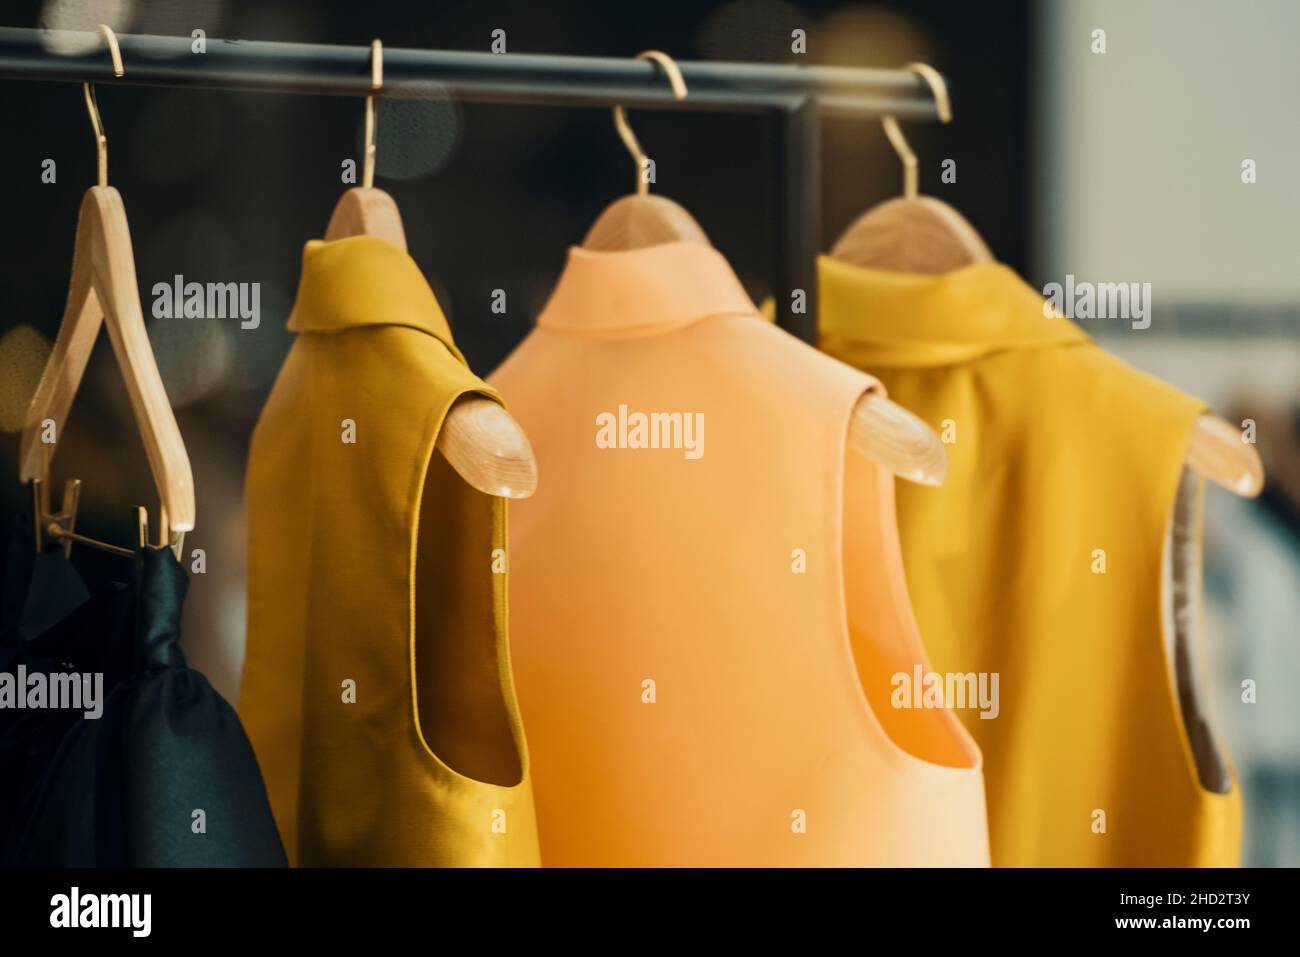 shopping concept - vêtements colorés dans un magasin de fantaisie Banque D'Images